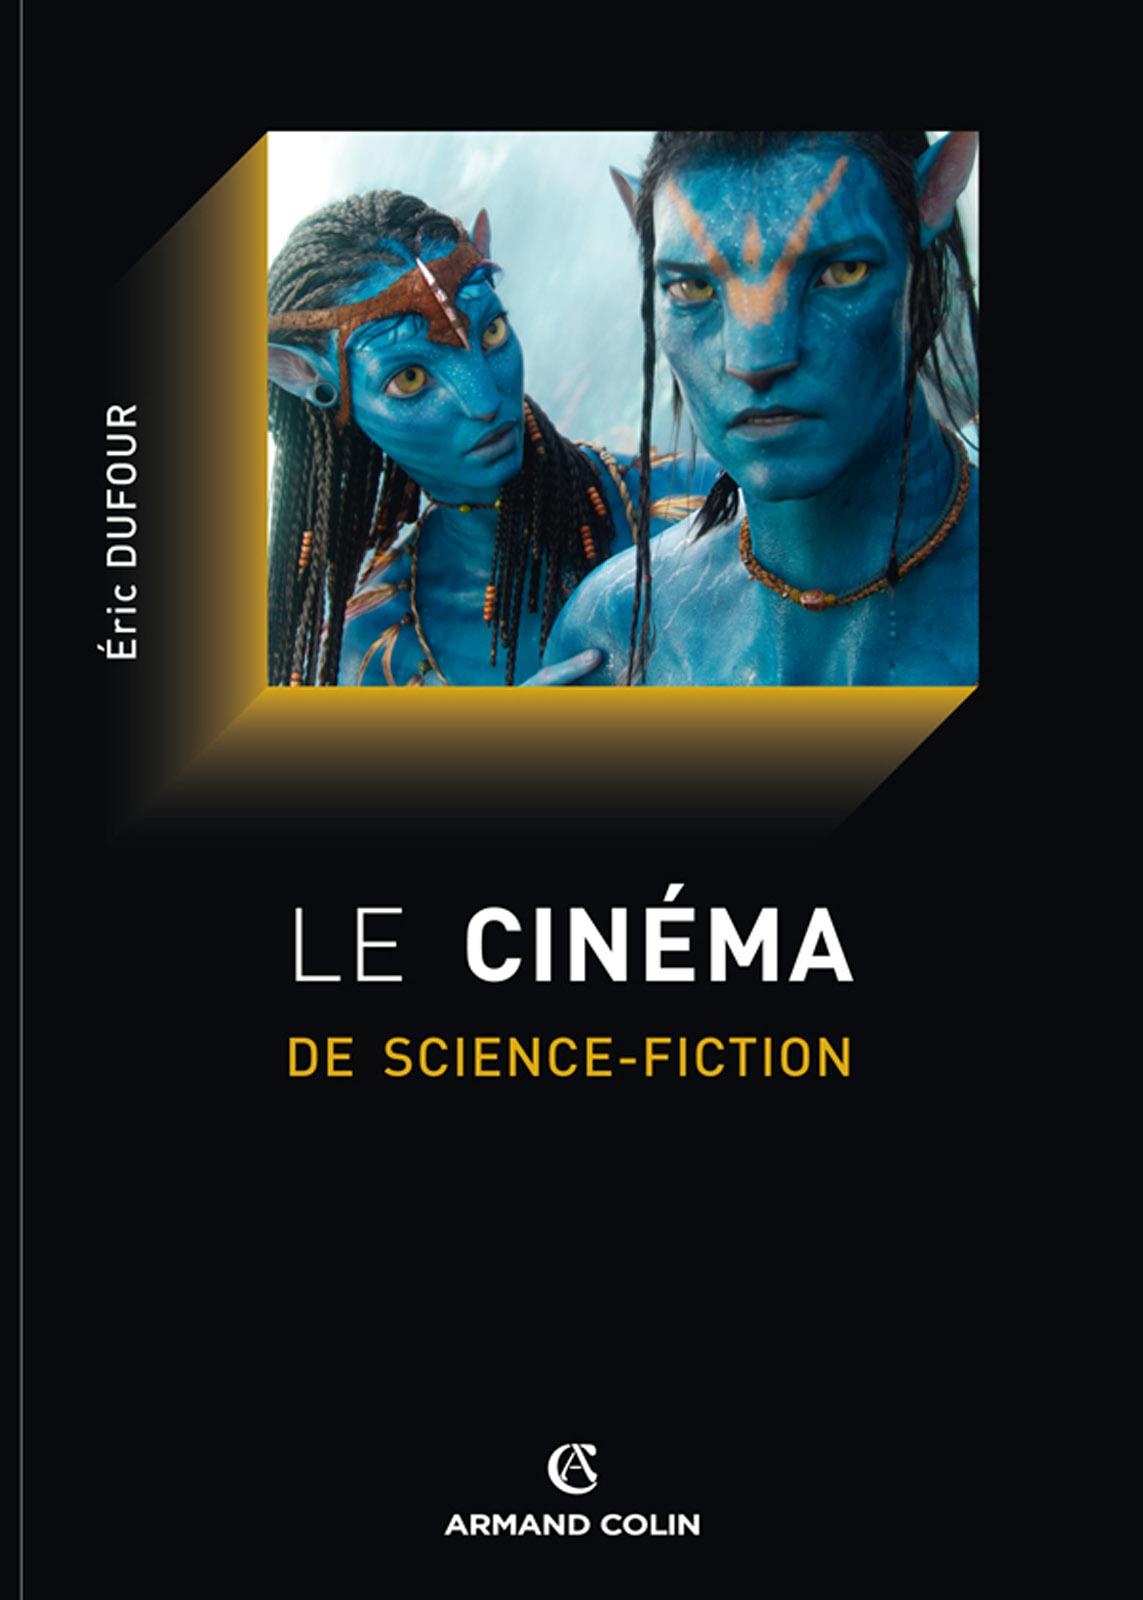 Le cinéma de science-fiction.